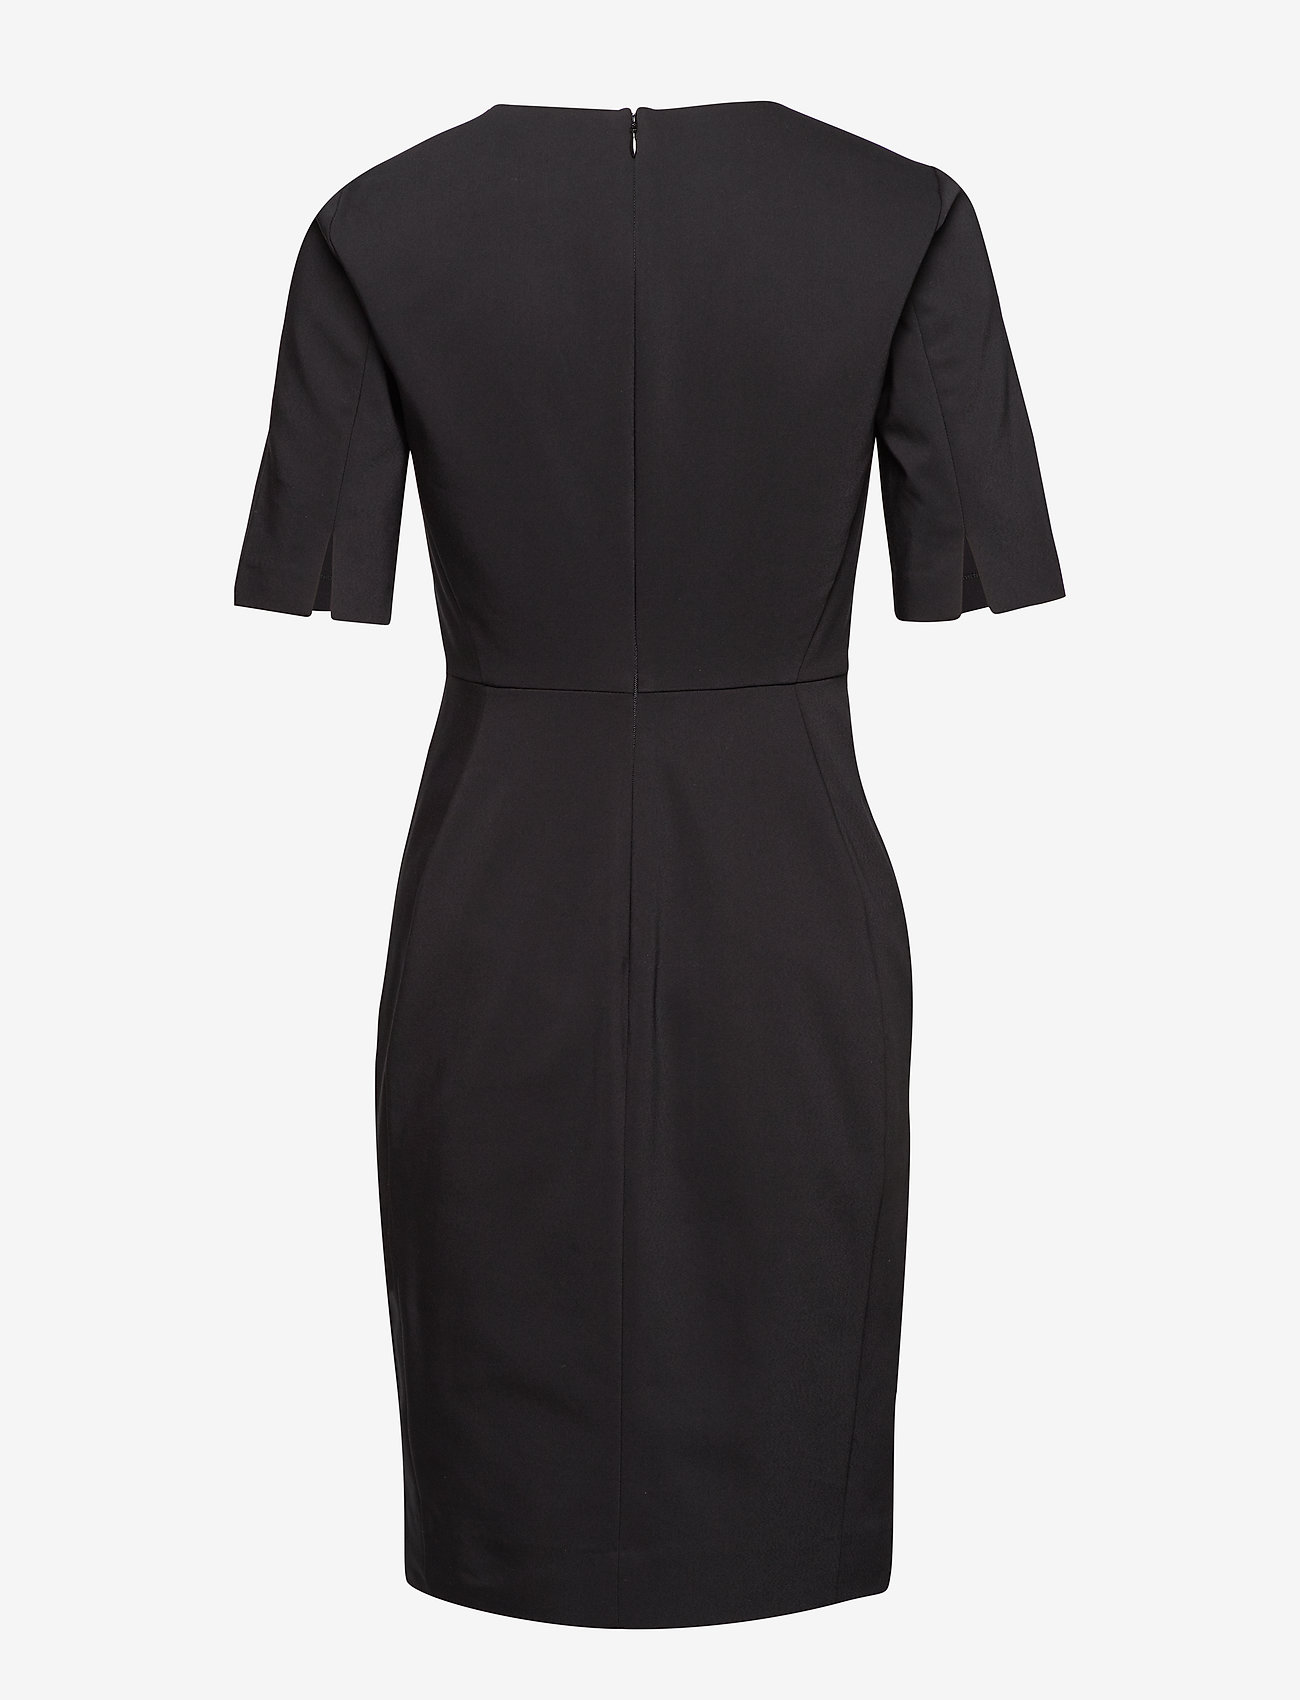 InWear - Zella Dress - festtøj til outletpriser - black - 1